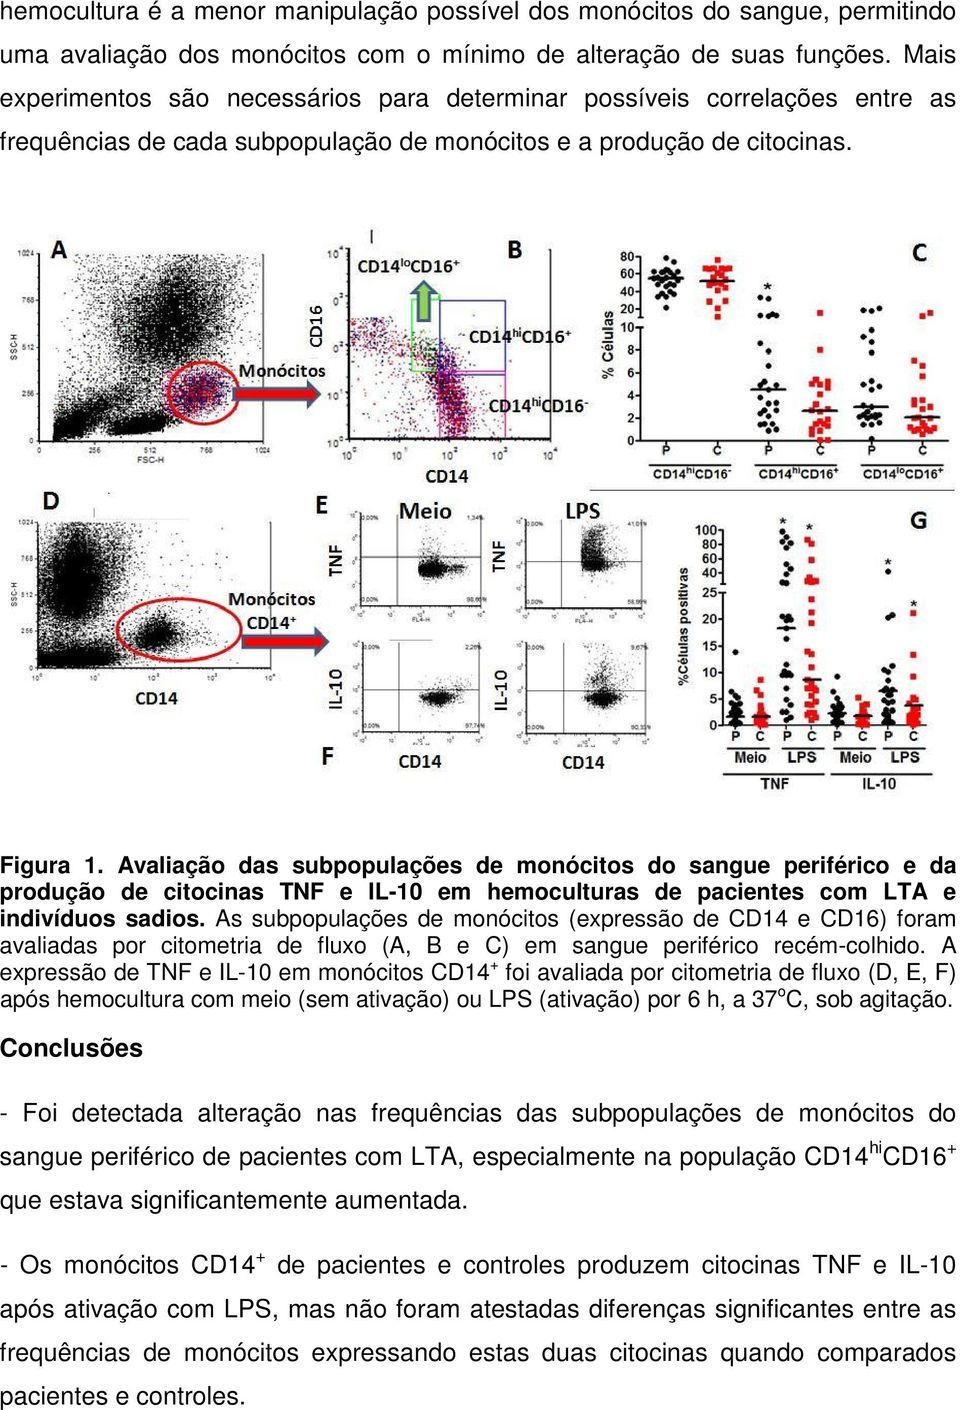 Avaliação das subpopulações de monócitos do sangue periférico e da produção de citocinas TNF e IL-10 em hemoculturas de pacientes com LTA e indivíduos sadios.